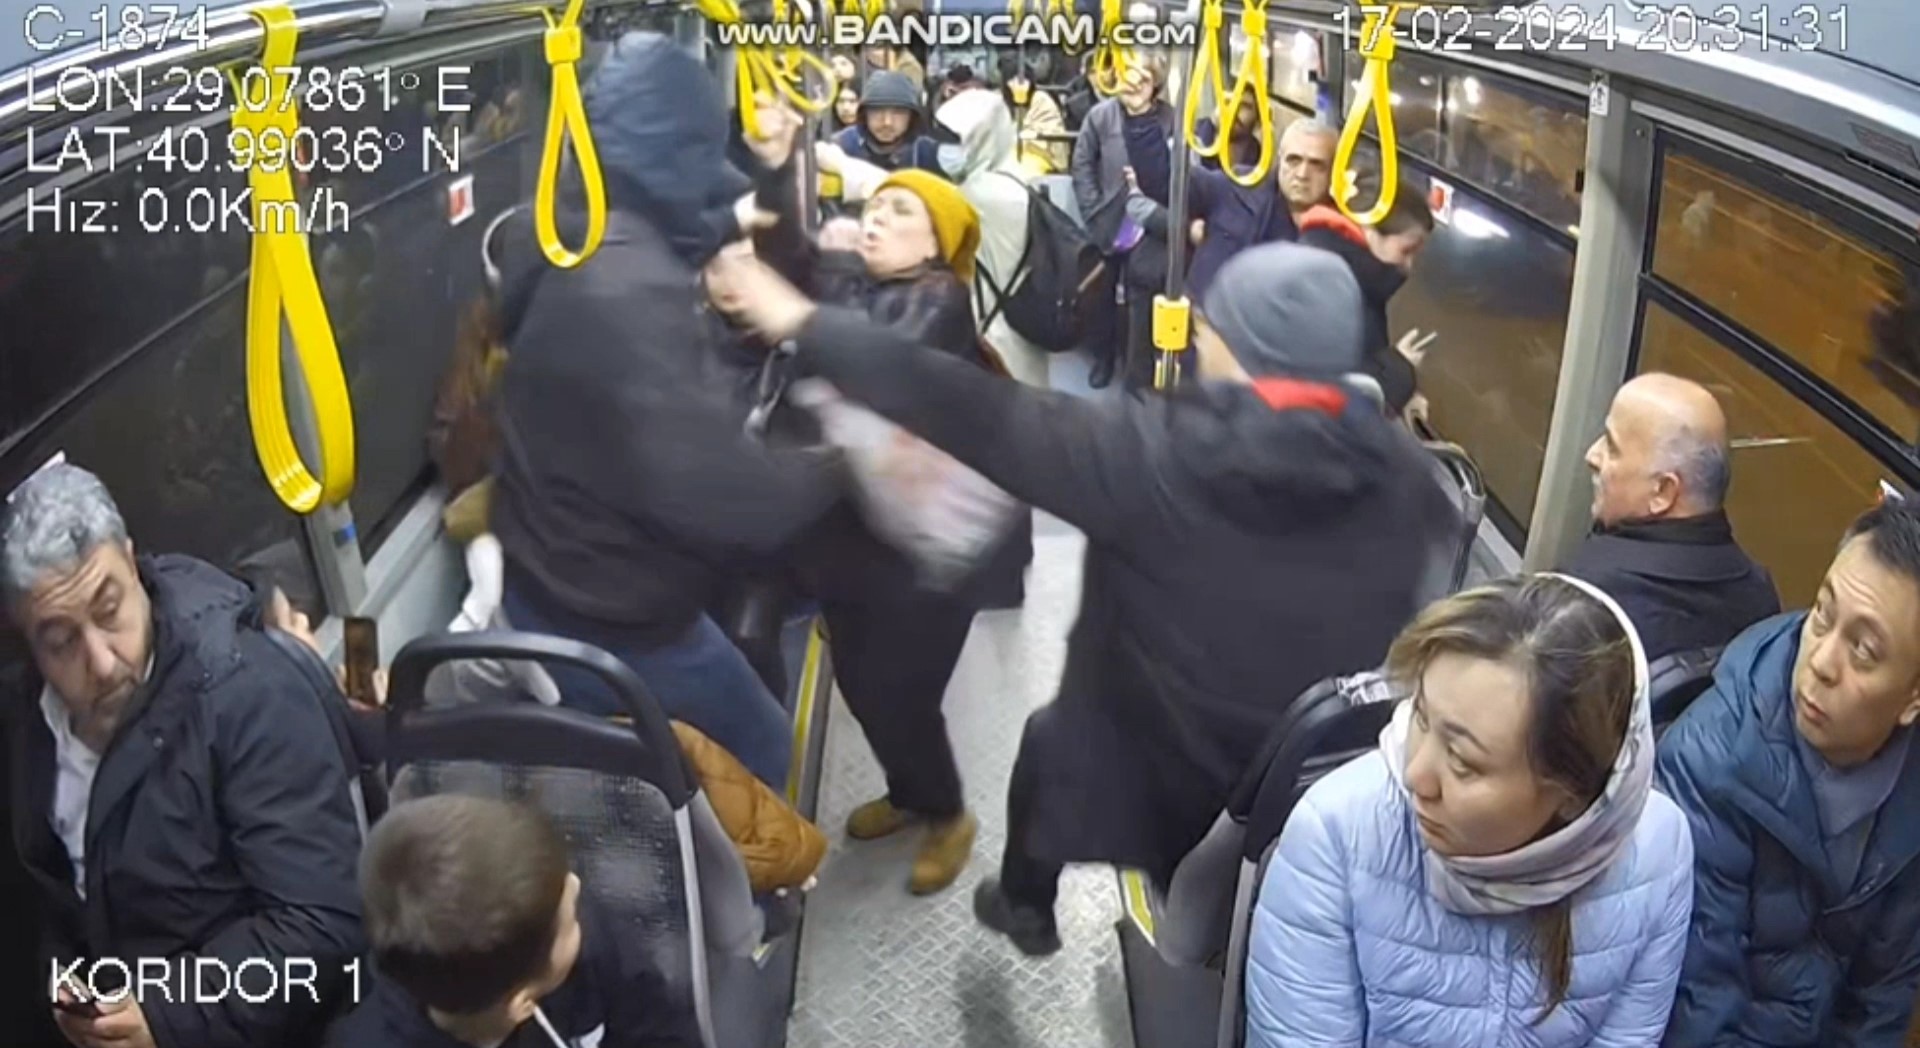 Otobüste Yer Isteyen Kadına Yumruklu Saldırı Kamerada2